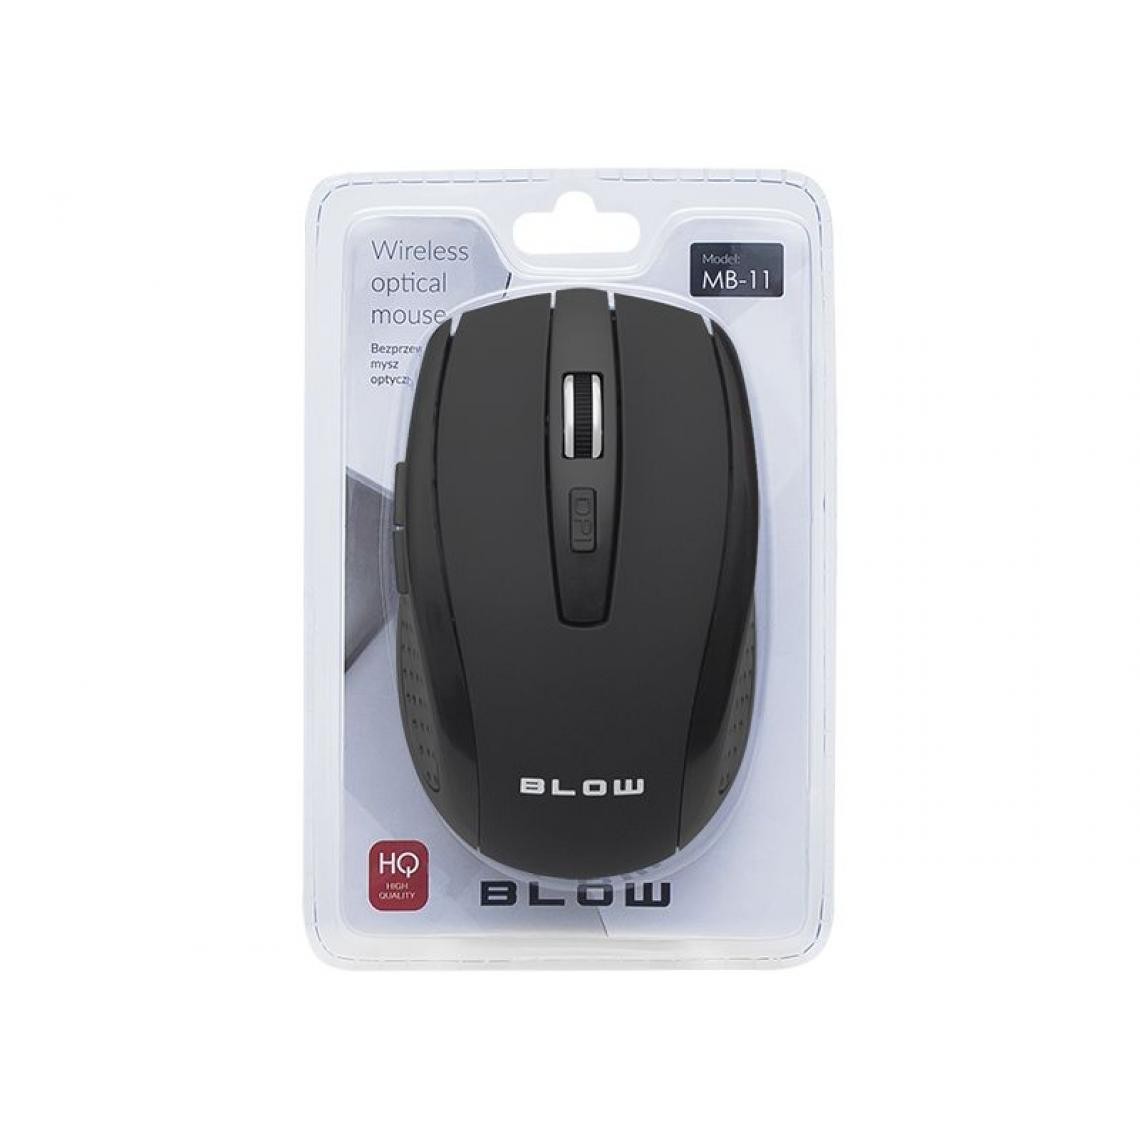 marque generique - Wireless optical mouse BLOW MB-11 black - Souris